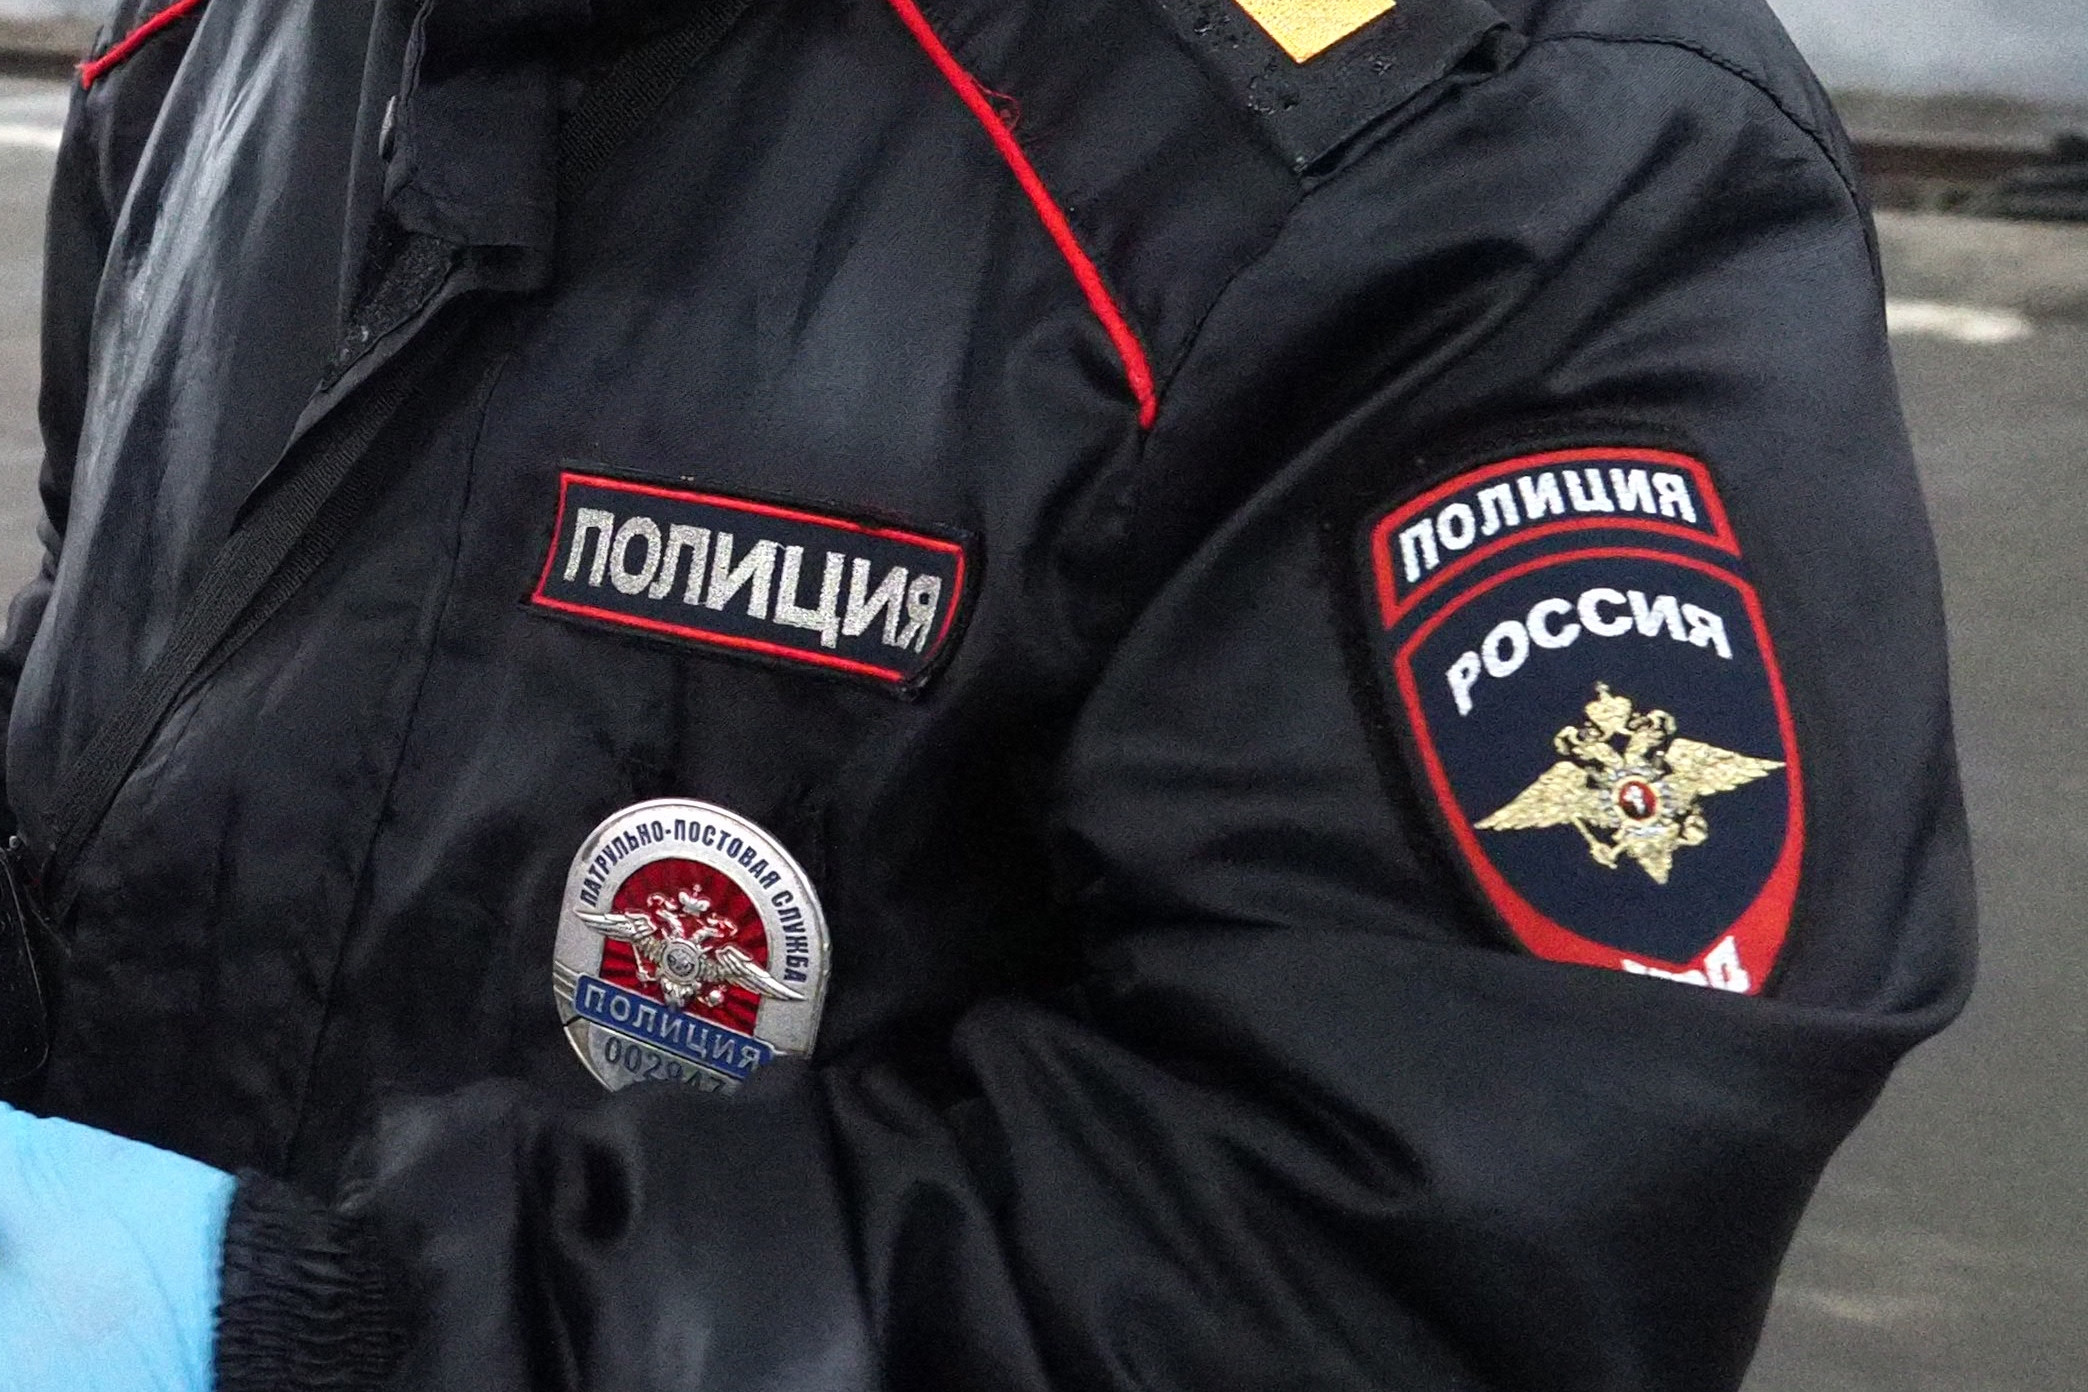 Сотрудники полиции ЦАО задержали подозреваемого в грабеже. Фото: Павел Волков, «Вечерняя Москва»